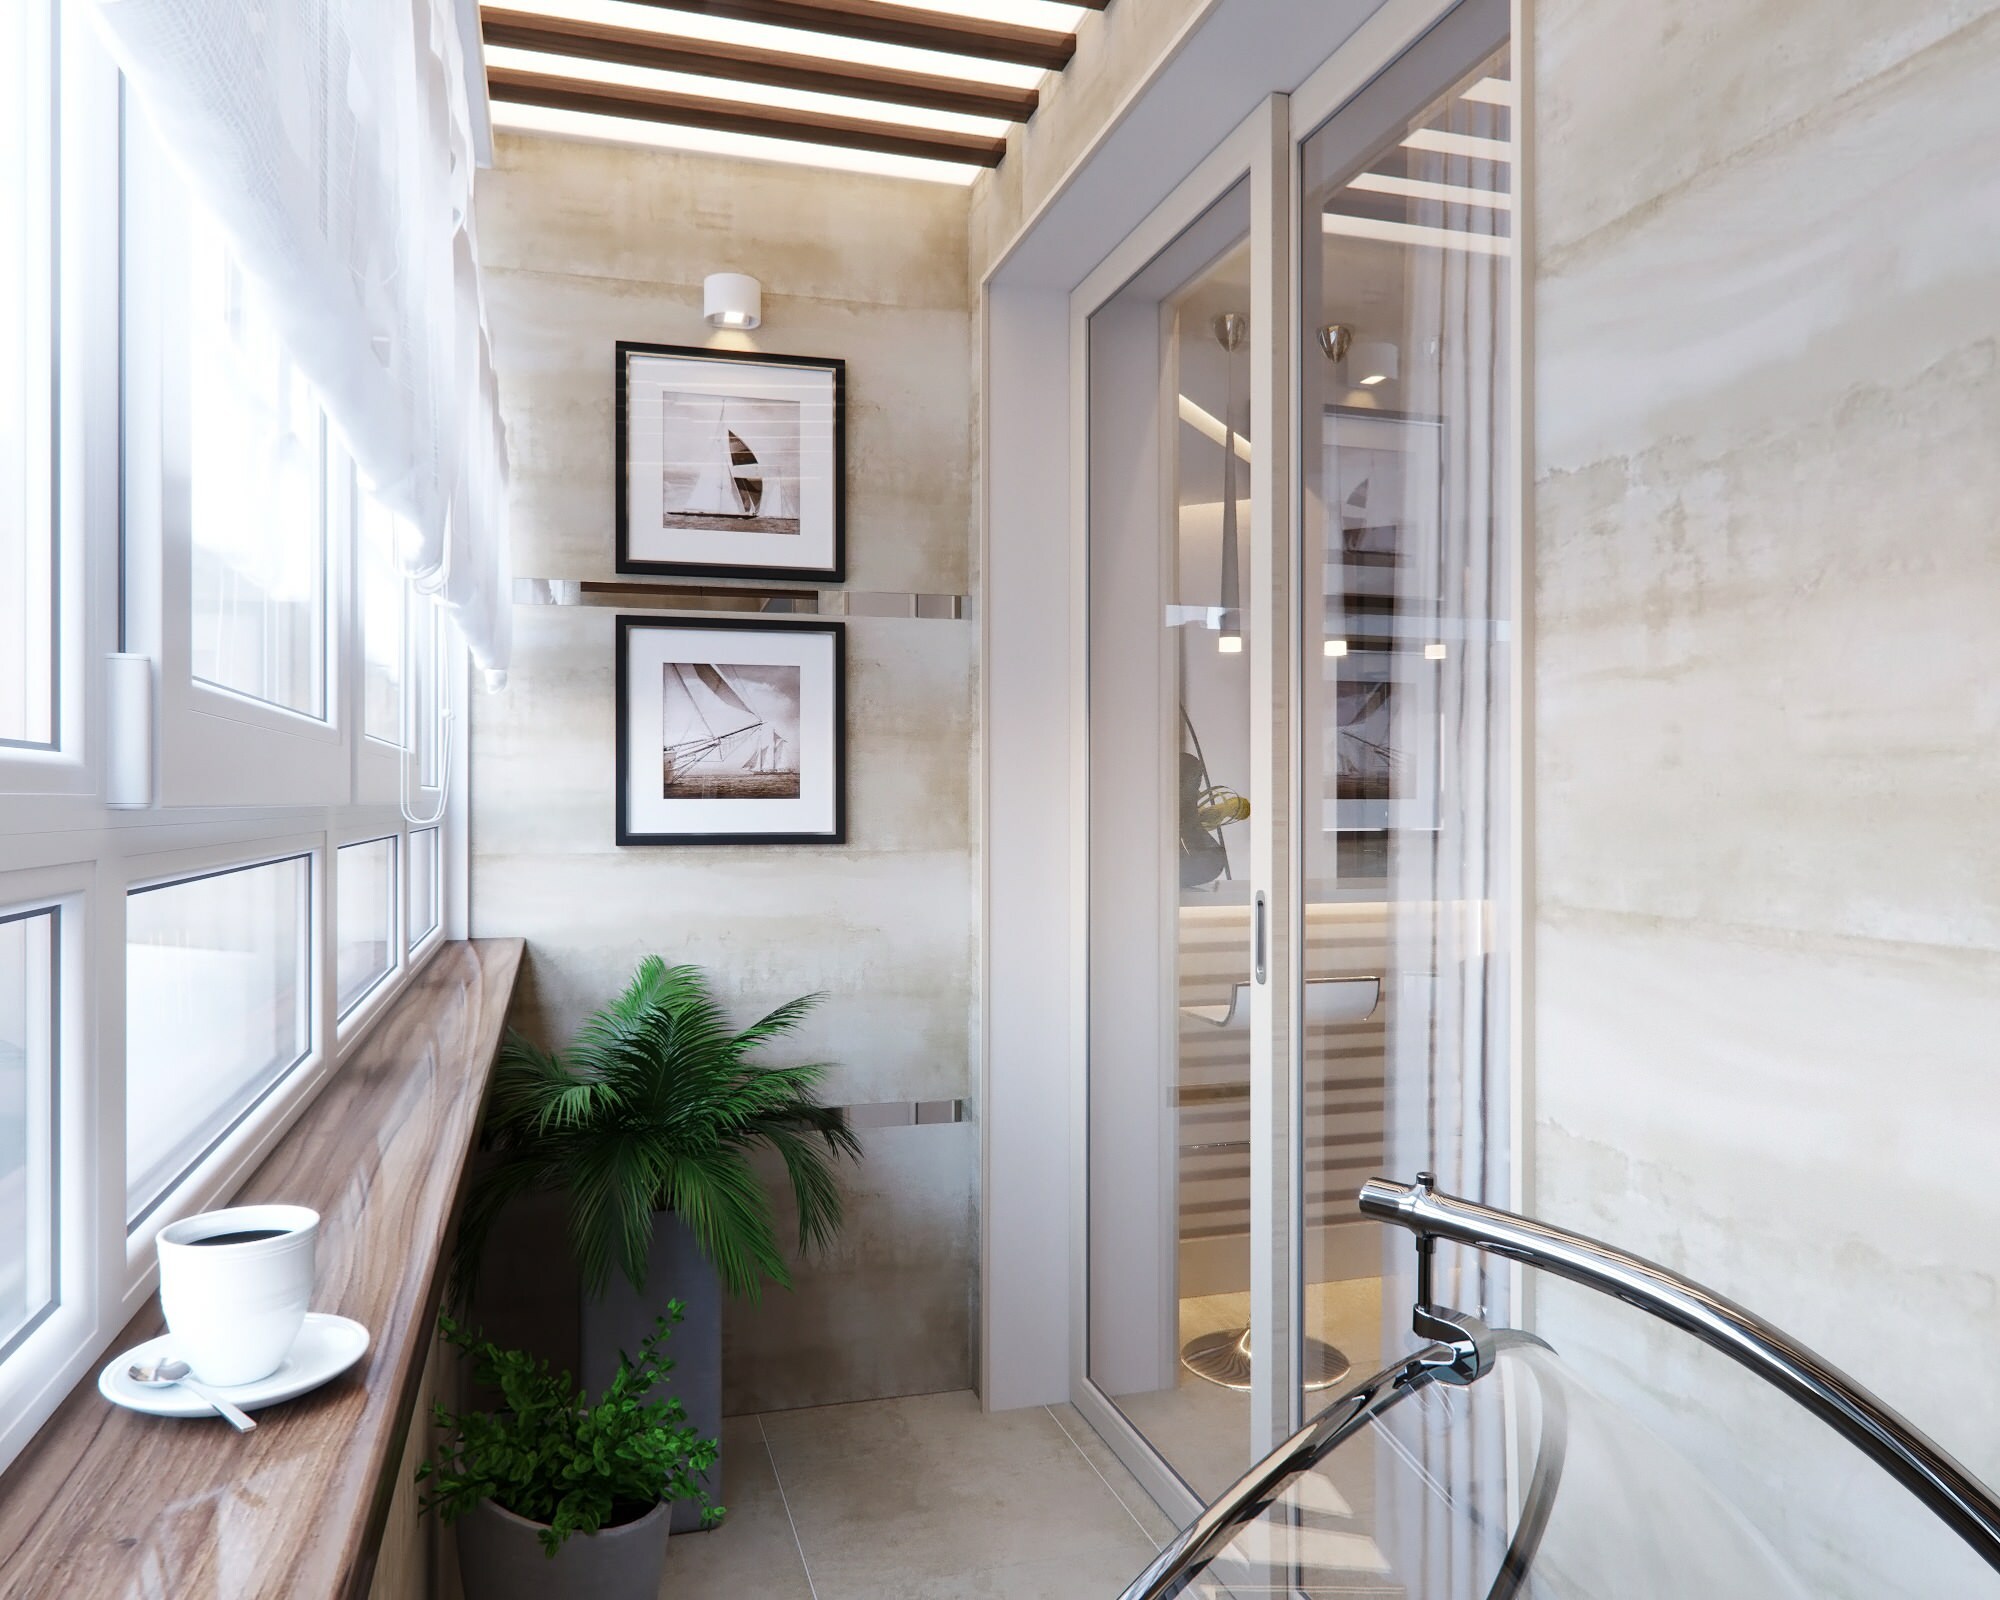 Интерьер ванной с балконом и световыми линиями